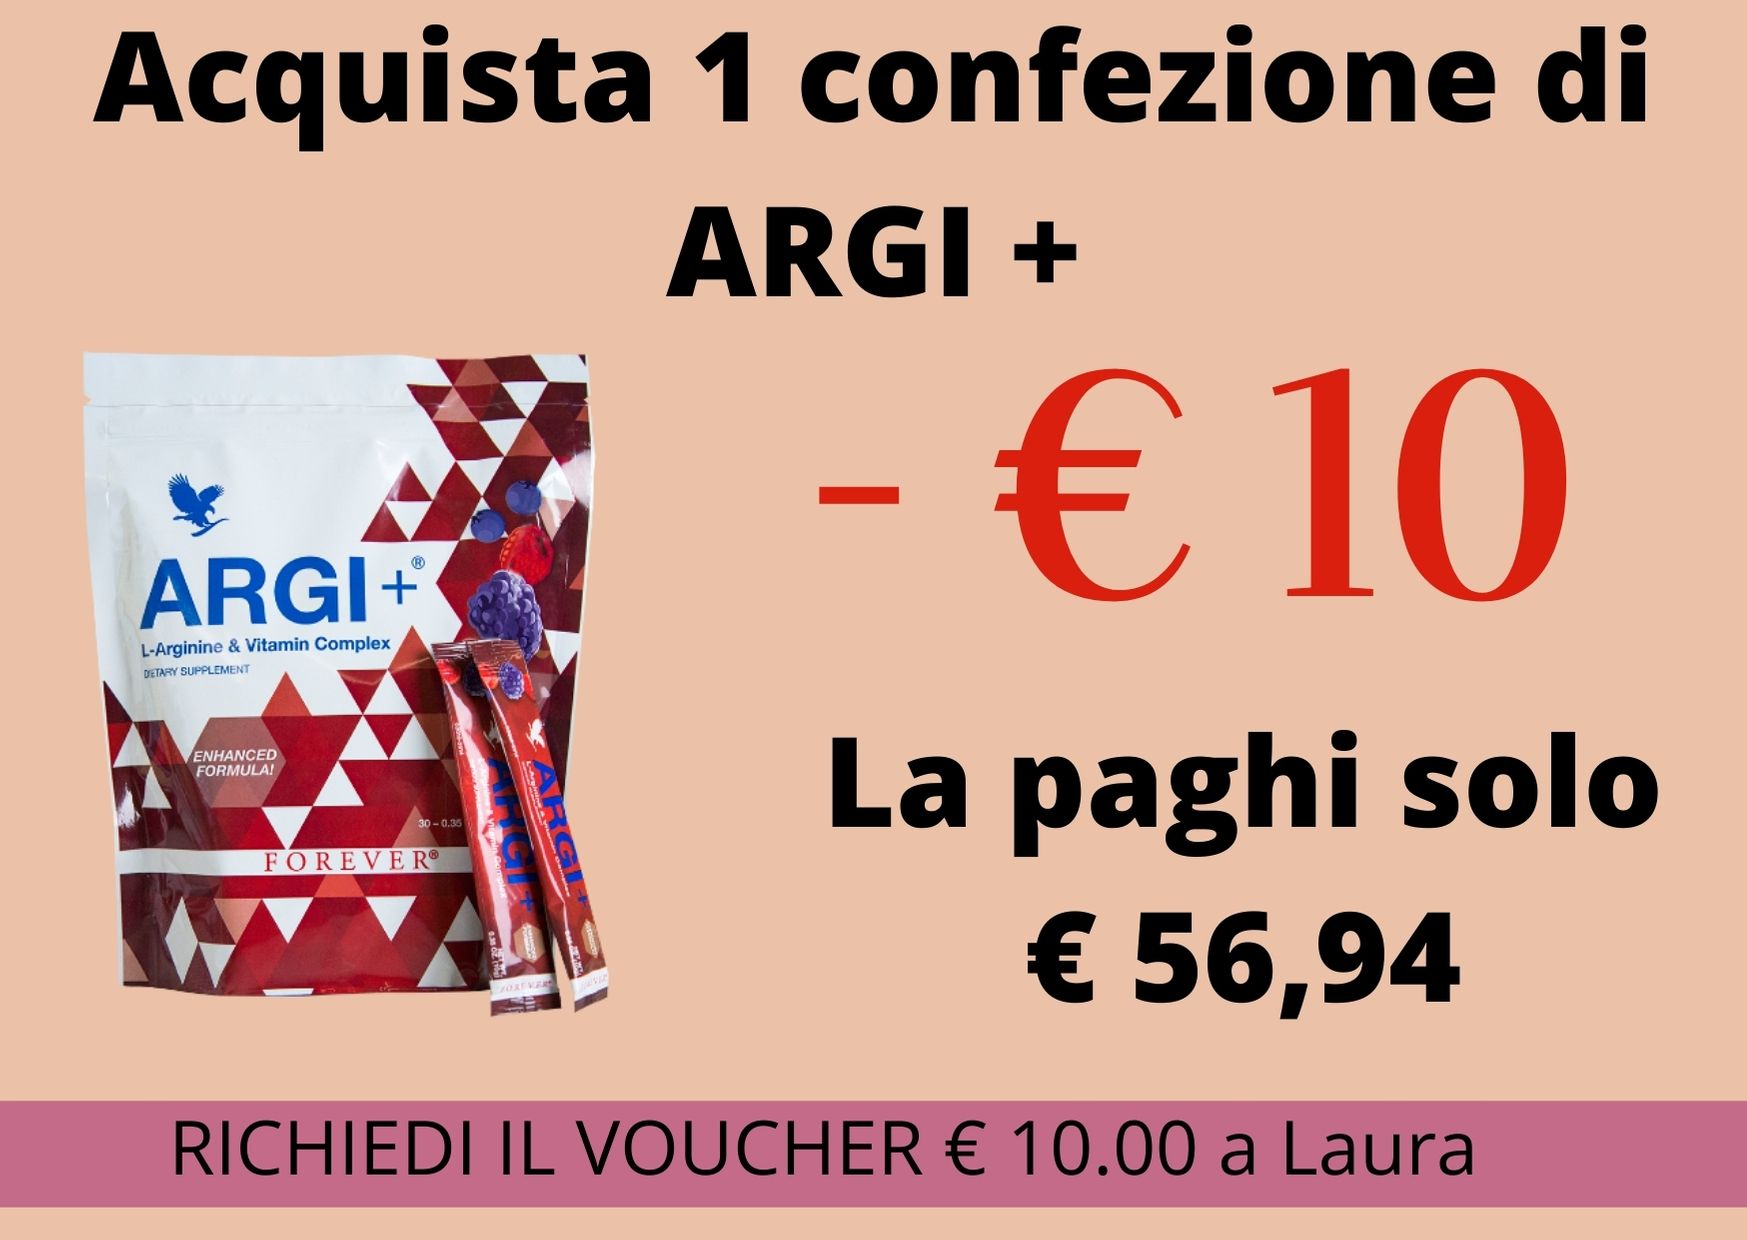 argi + voucher 10.jpg